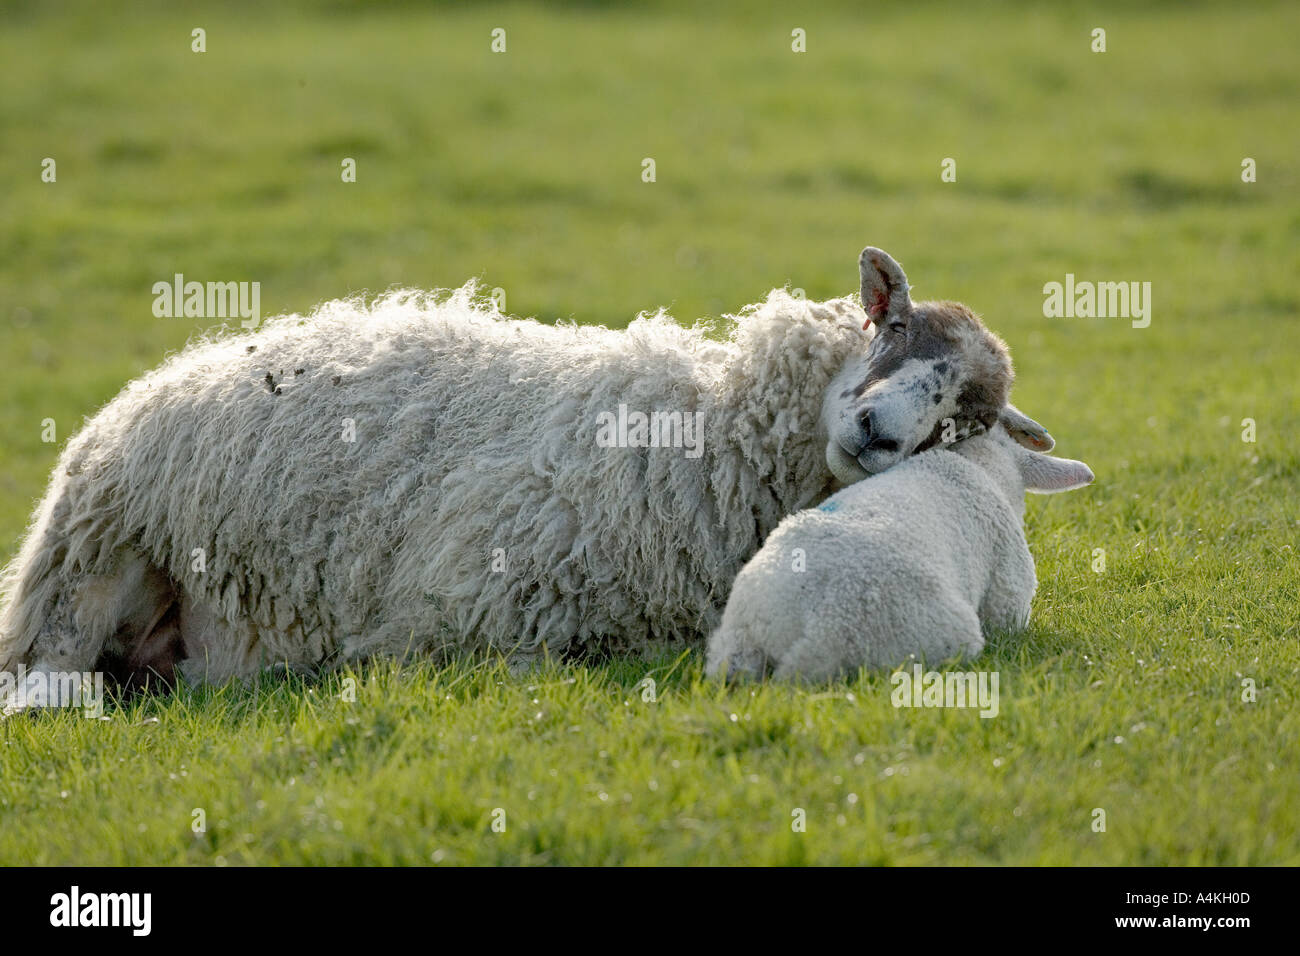 Pecora con agnello come un cuscino Foto Stock